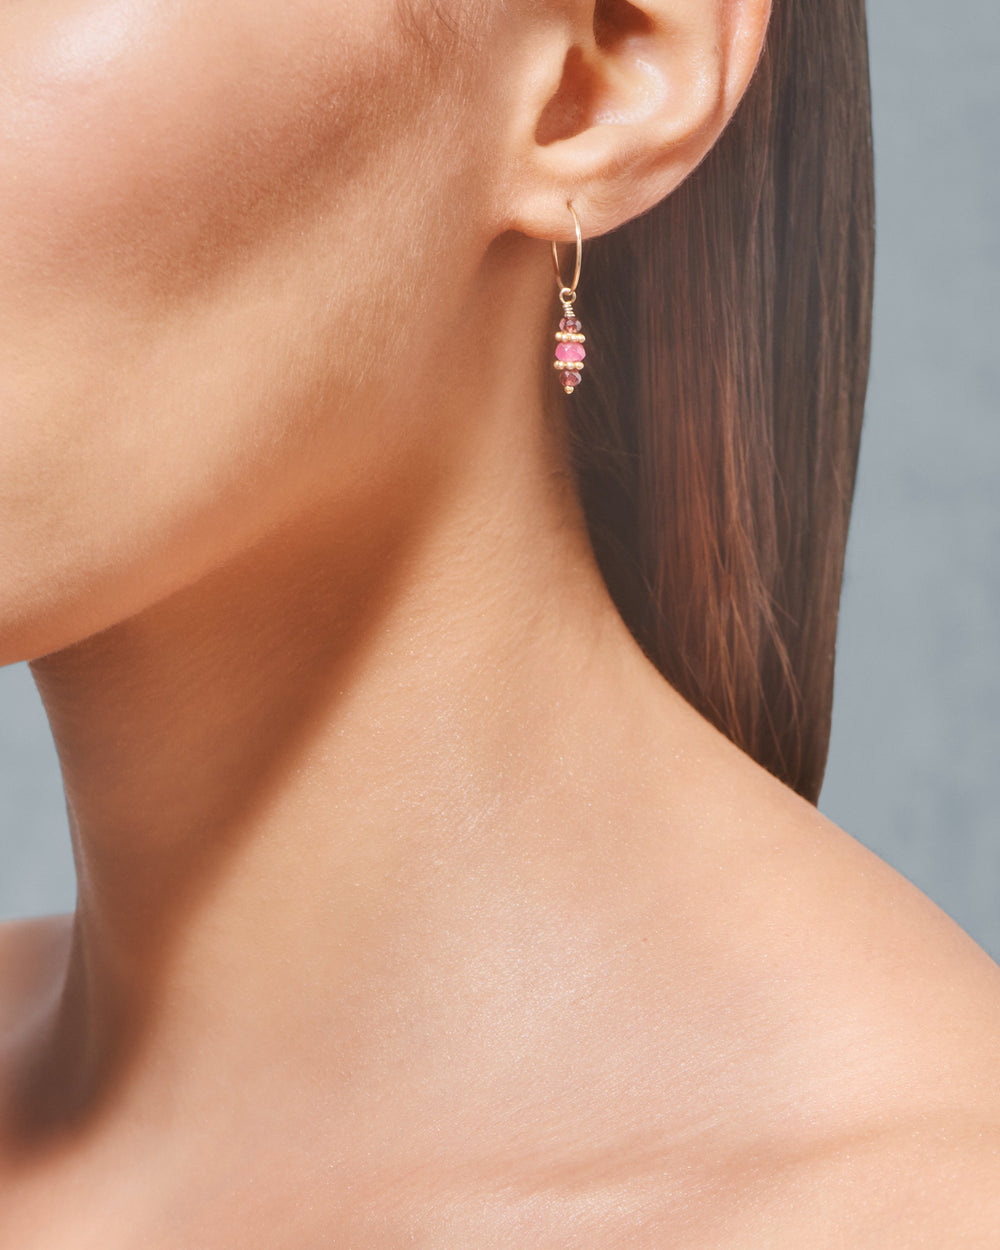 Padma earrings